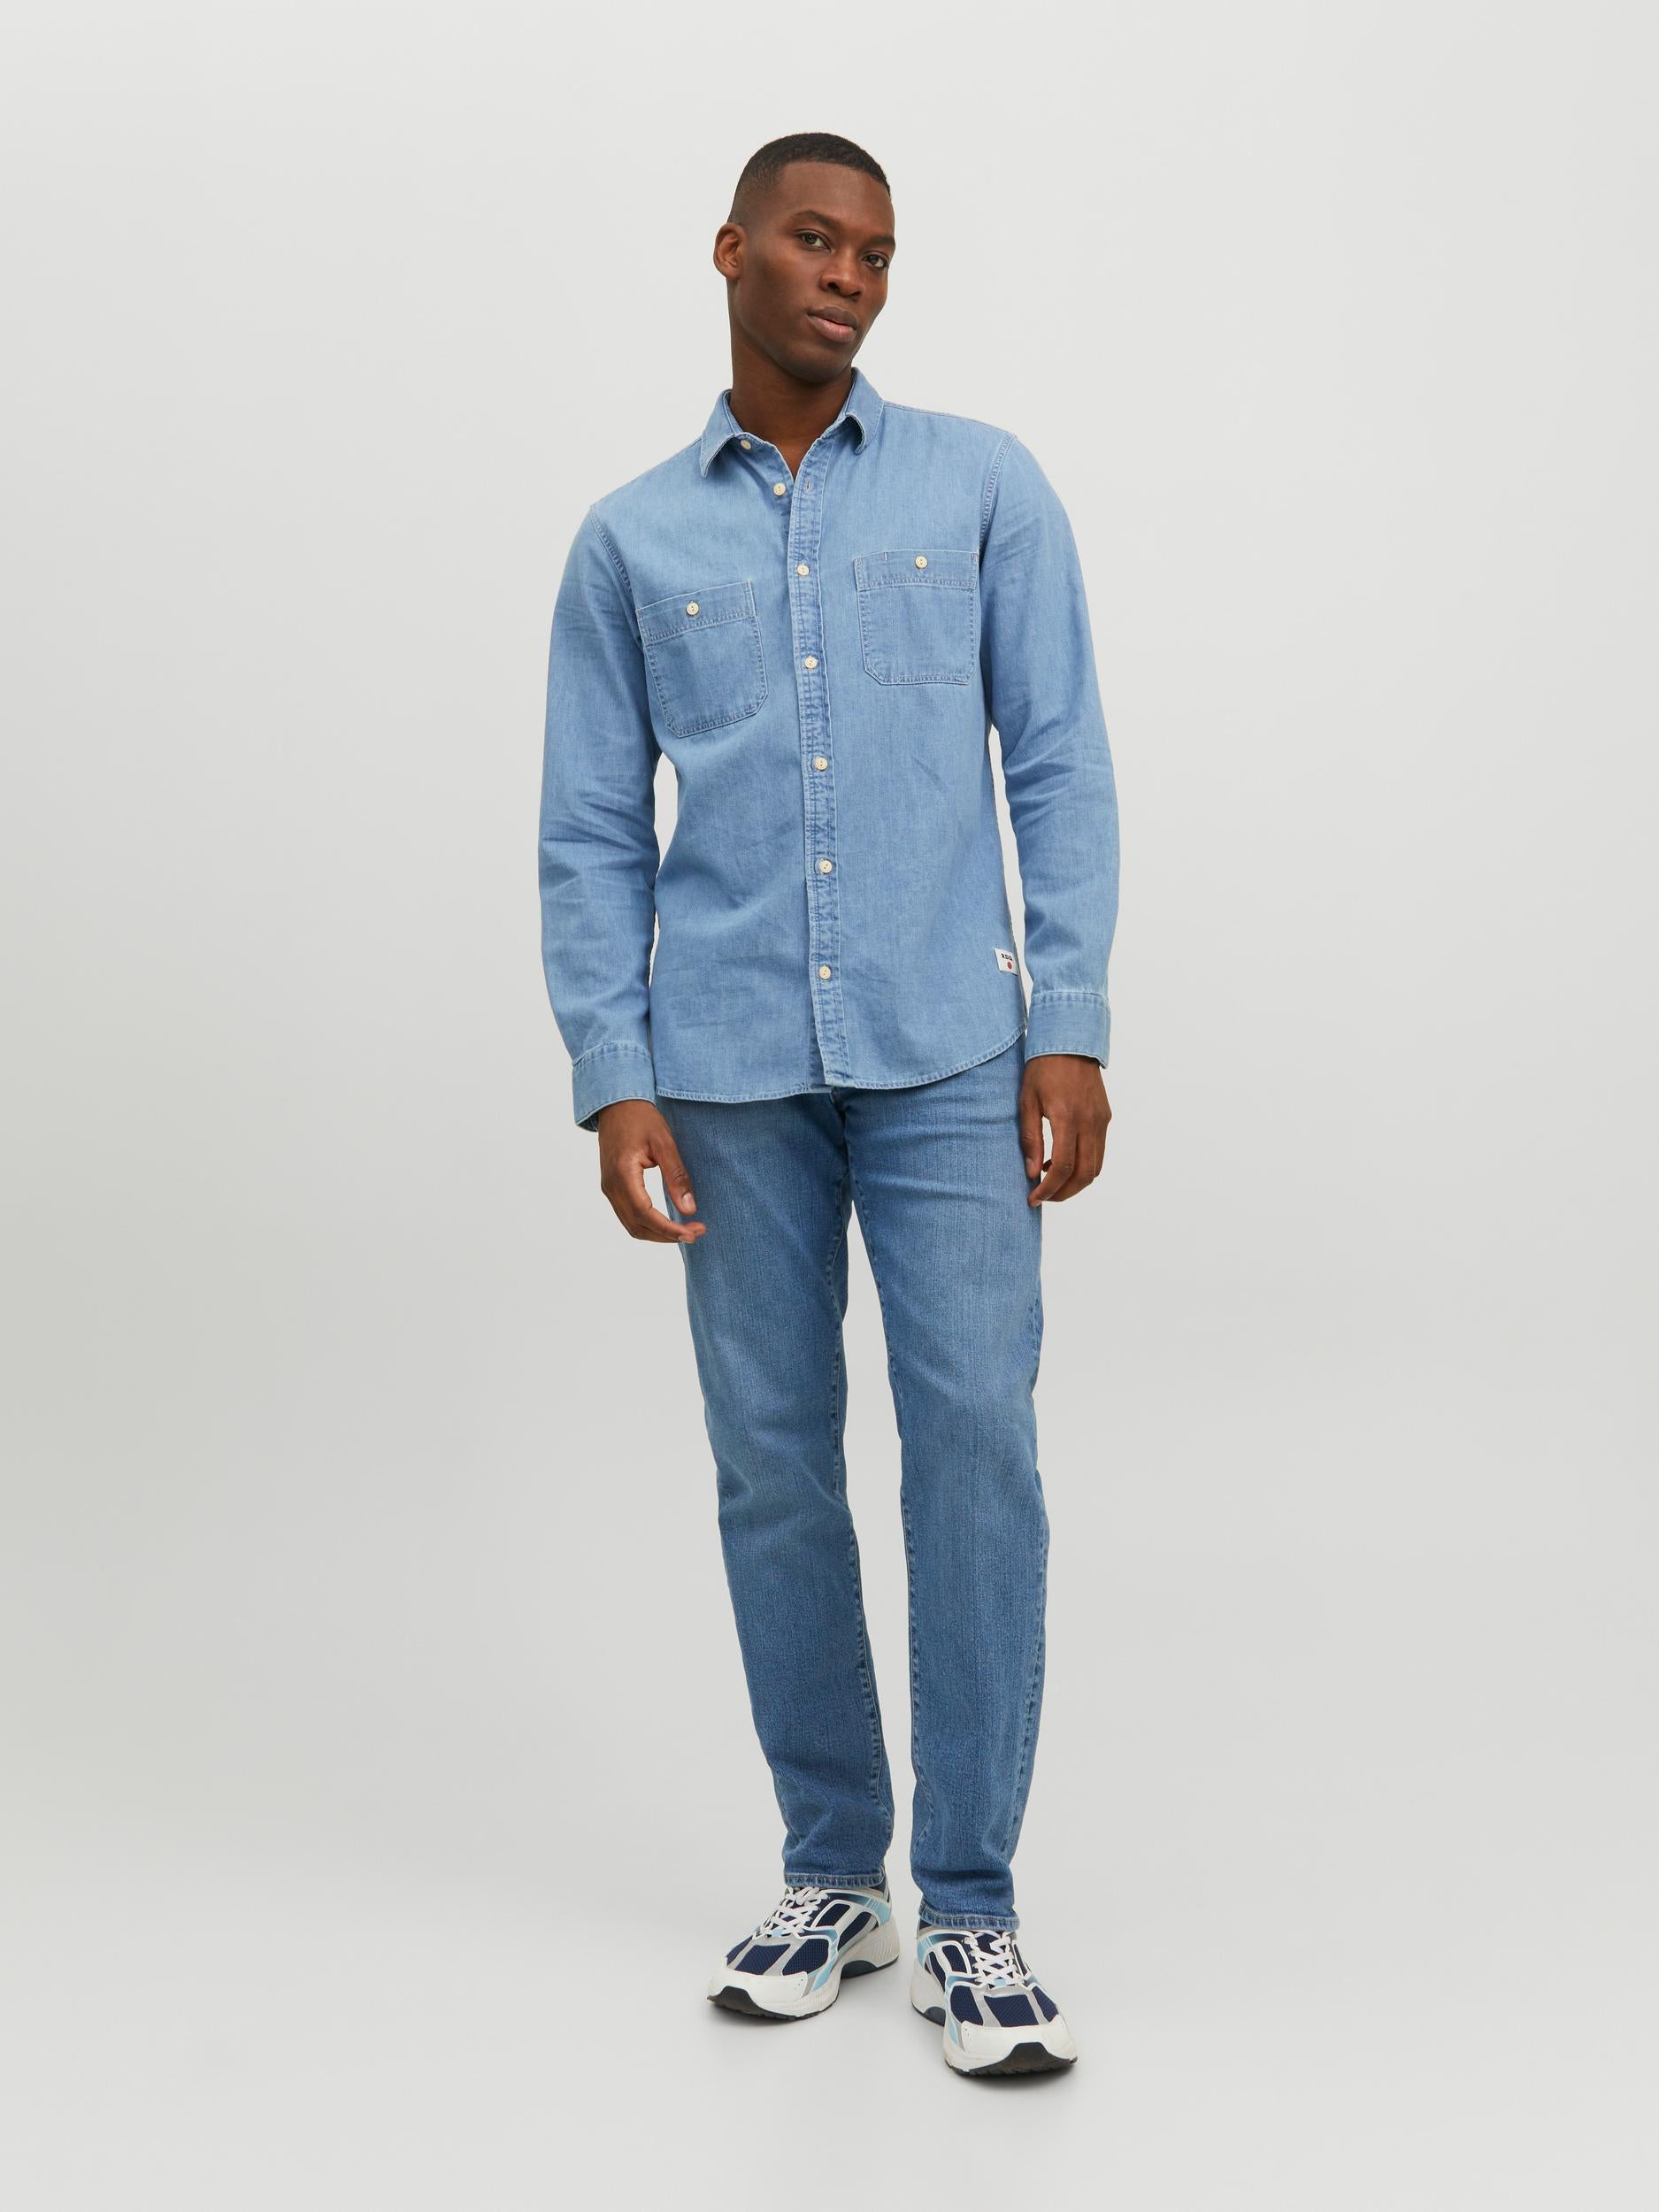 Men's Jaxon Light Blue Denim Long Sleeve Shirt-Model Full Front View